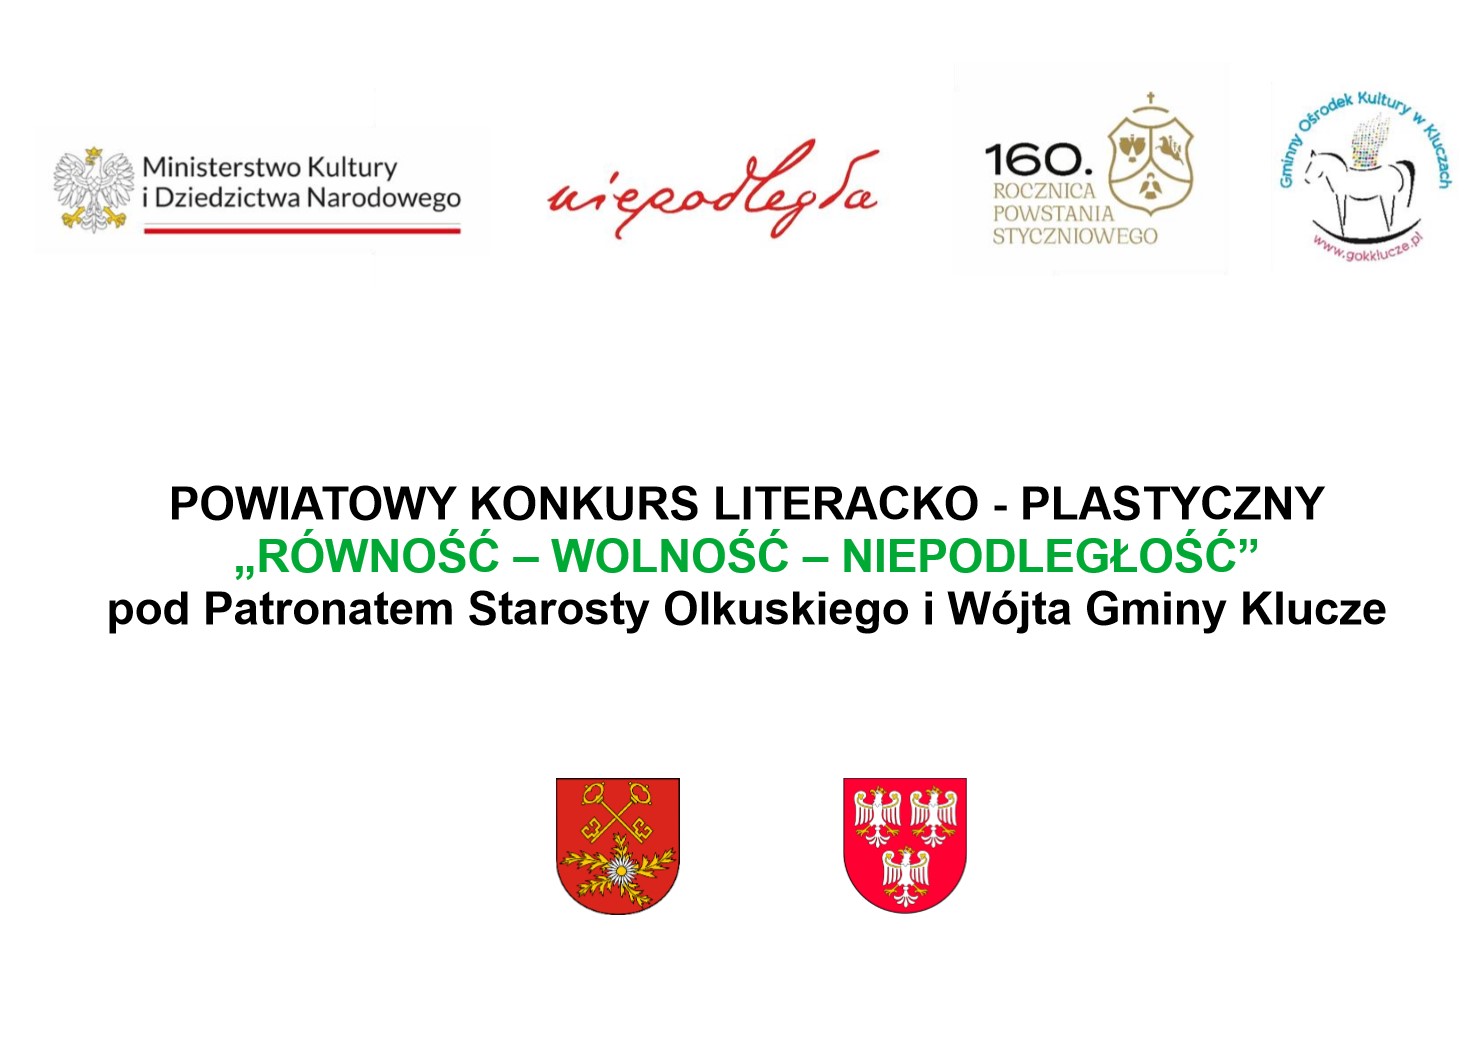 Logotypy i informacja o powiatowym konkursie literacko-plastycznym 